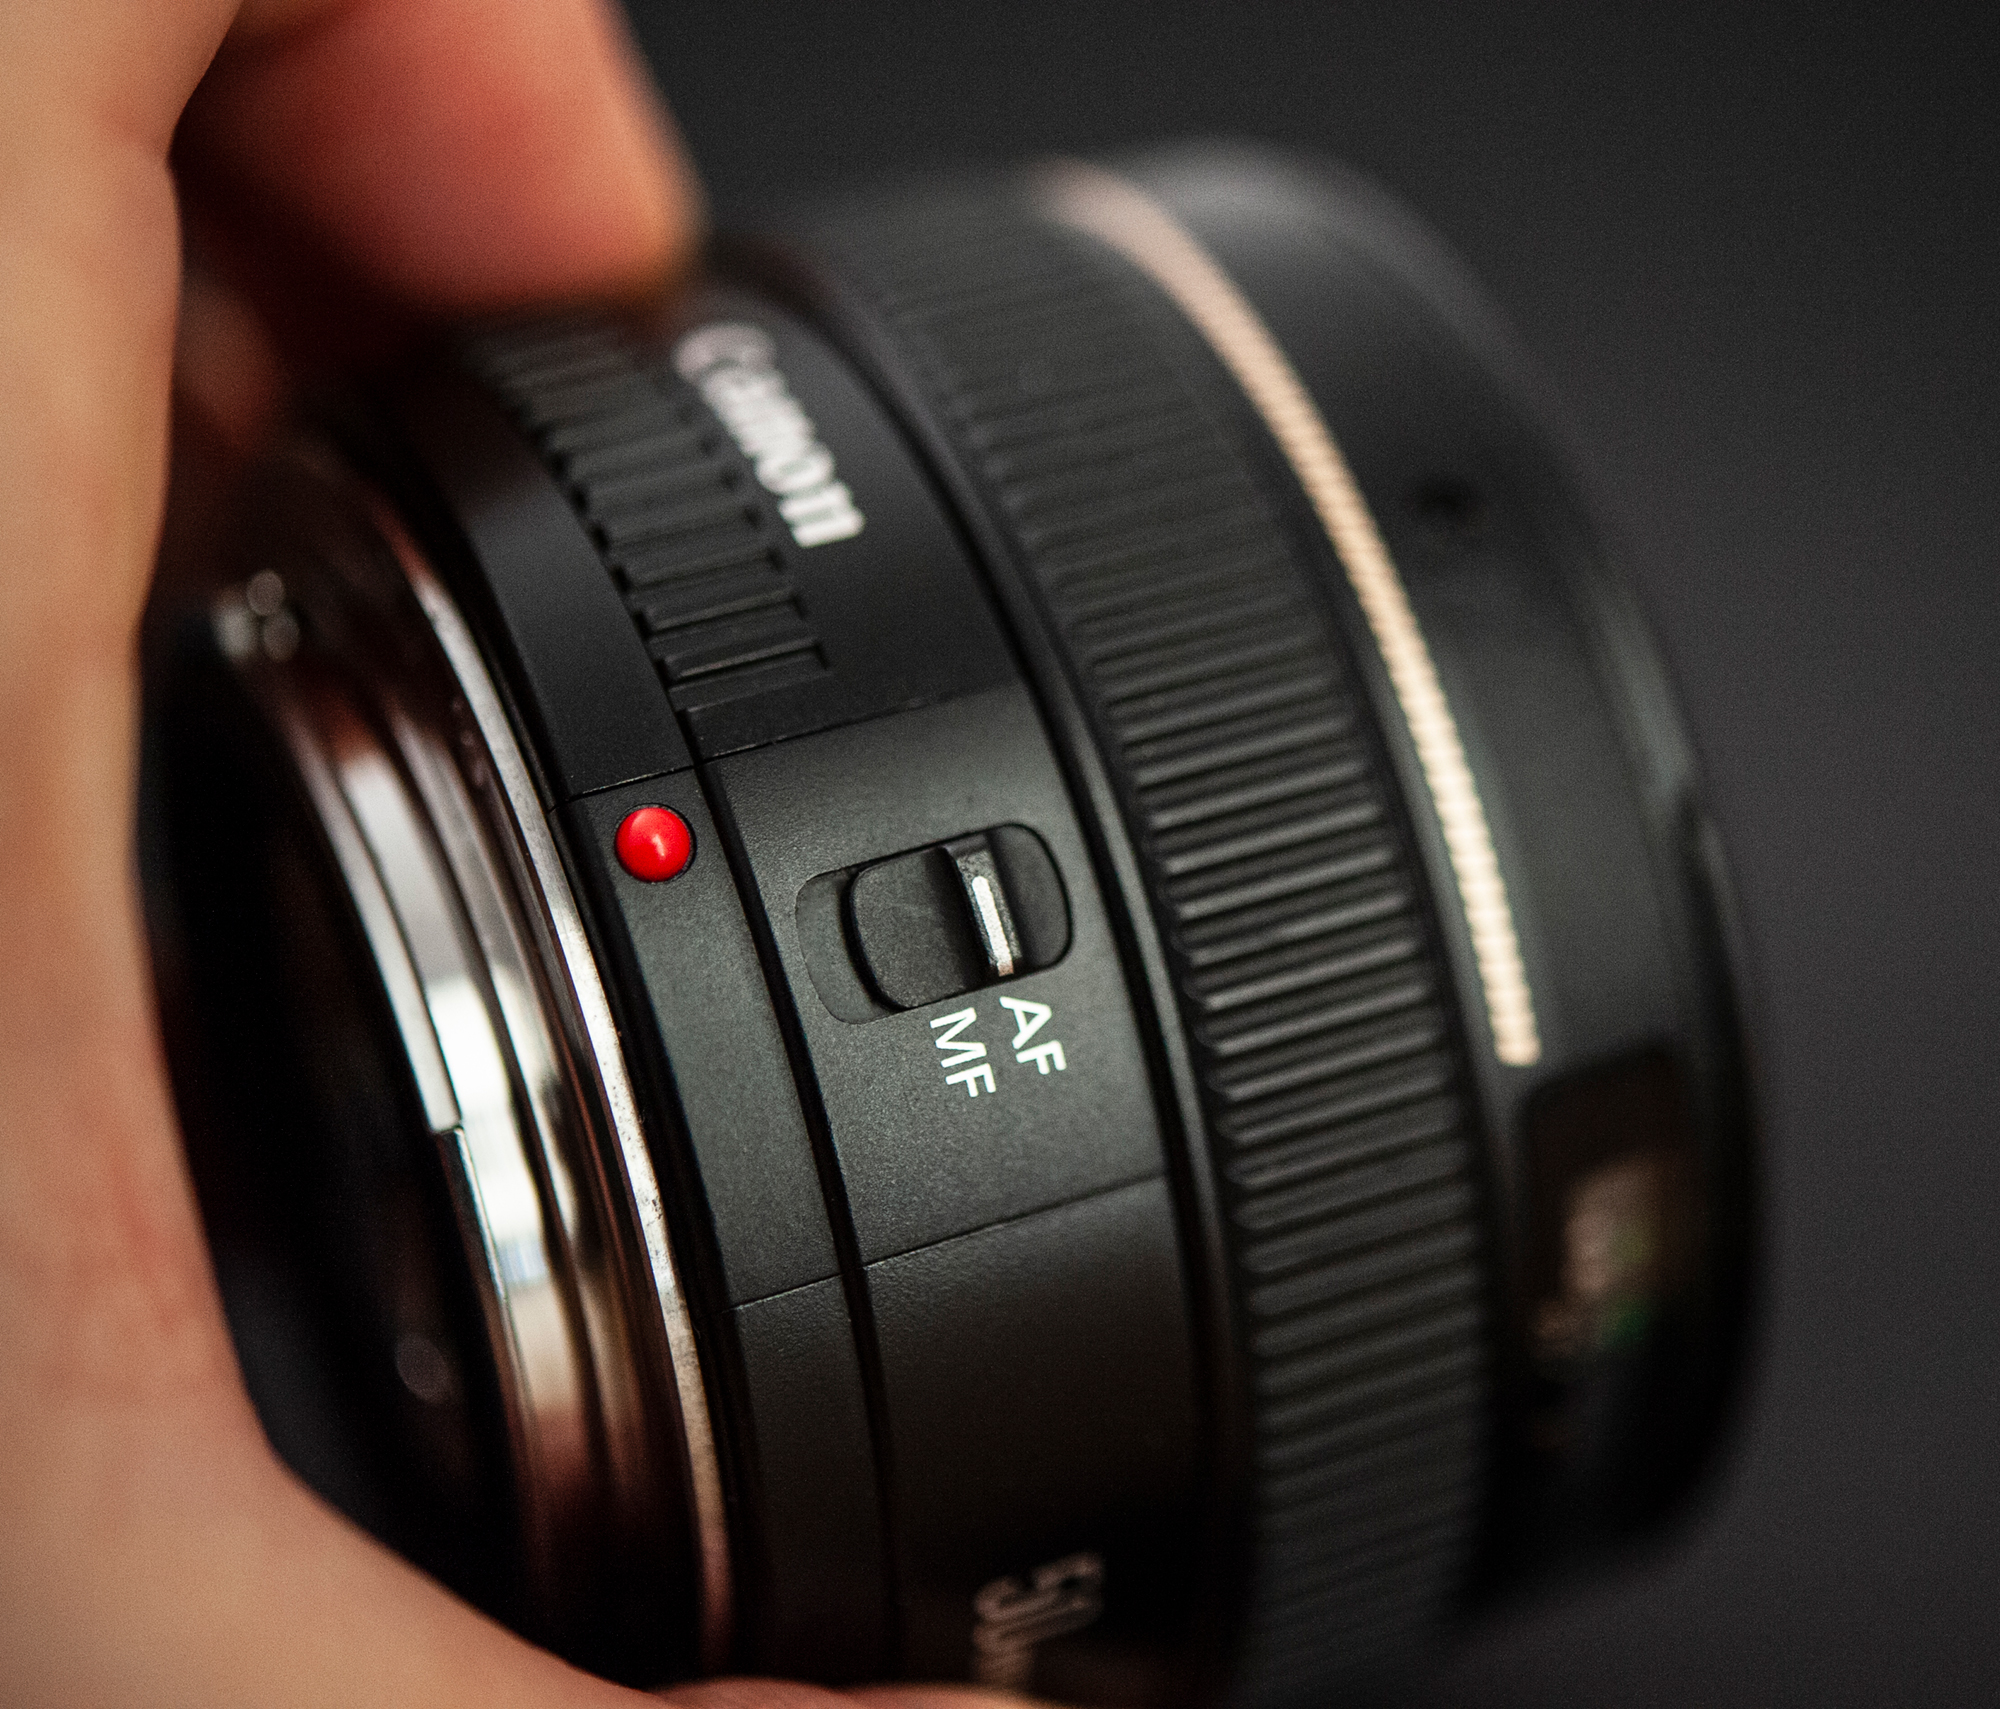 Canon EF 50mm F1.4 USM nieśmiertelny obiektyw prawie do każdego rodzaju fotografii. Zdjęcia przykładowe na Canon EOS 5D Mark IV